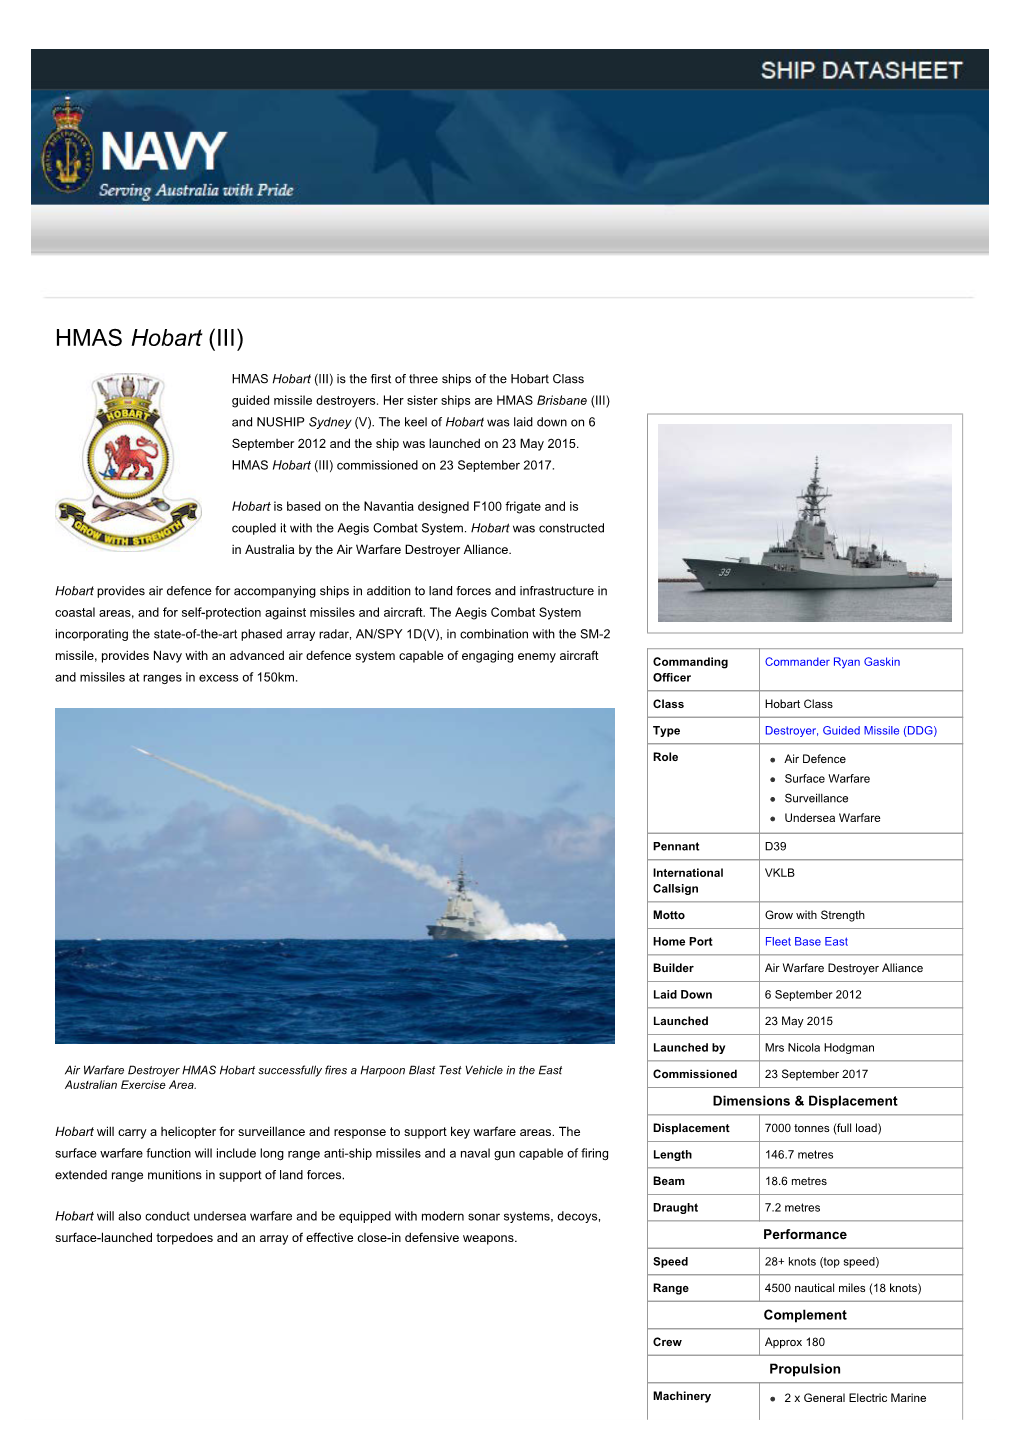 HMAS Hobart (III) | Royal Australian Navy